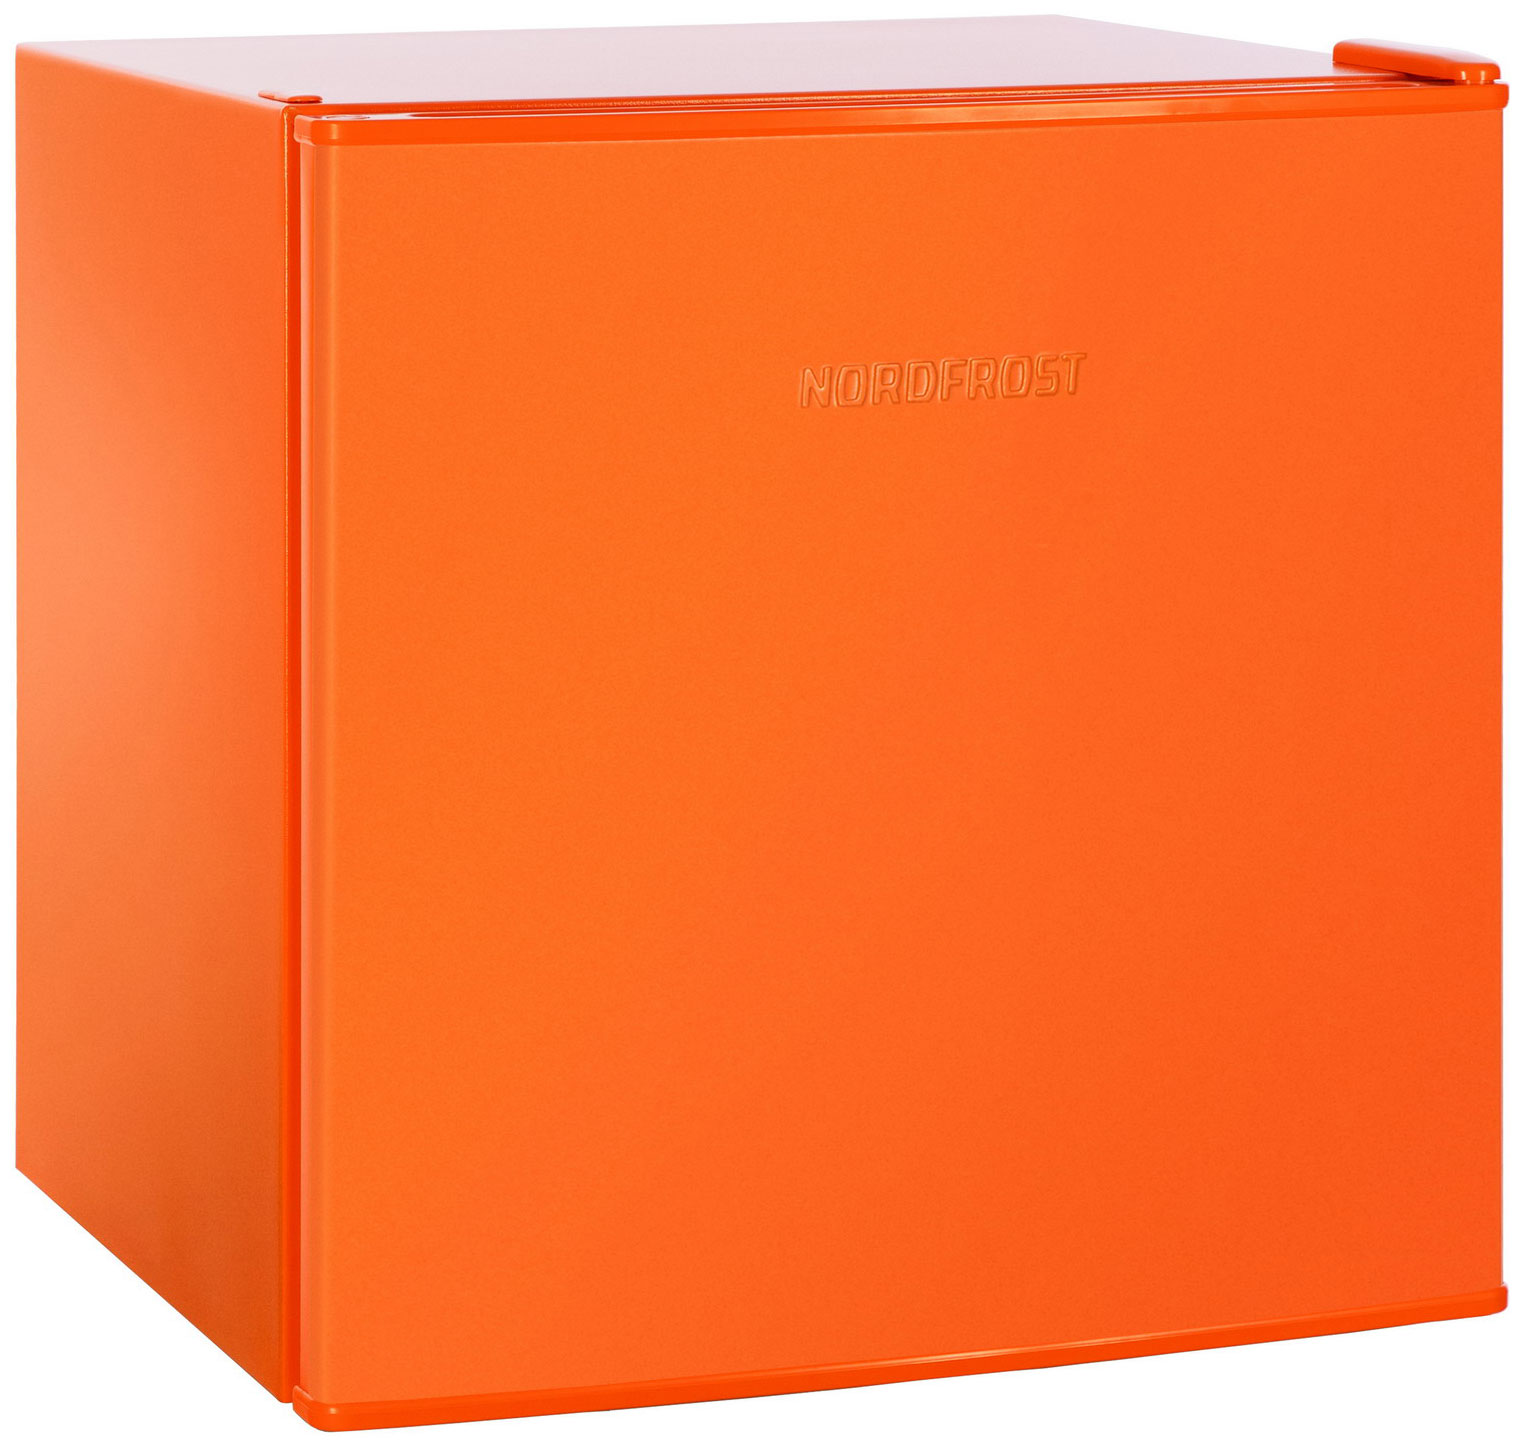 Холодильник NordFrost NR 402 оранжевый кастрюля 3 л стеклянная крышка антипригарное покрытие тёмный мрамор